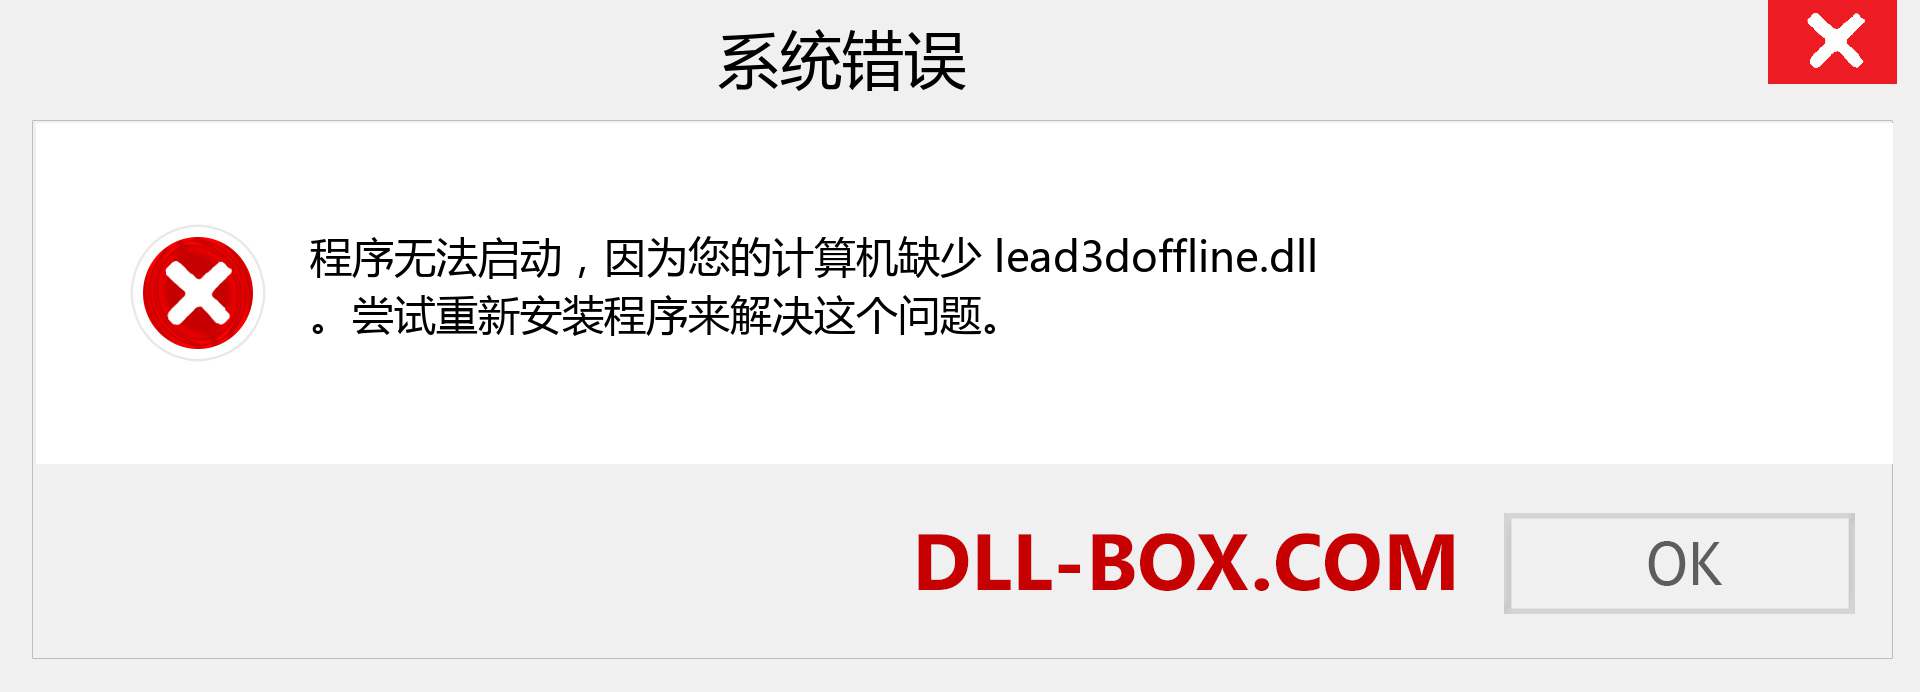 lead3doffline.dll 文件丢失？。 适用于 Windows 7、8、10 的下载 - 修复 Windows、照片、图像上的 lead3doffline dll 丢失错误